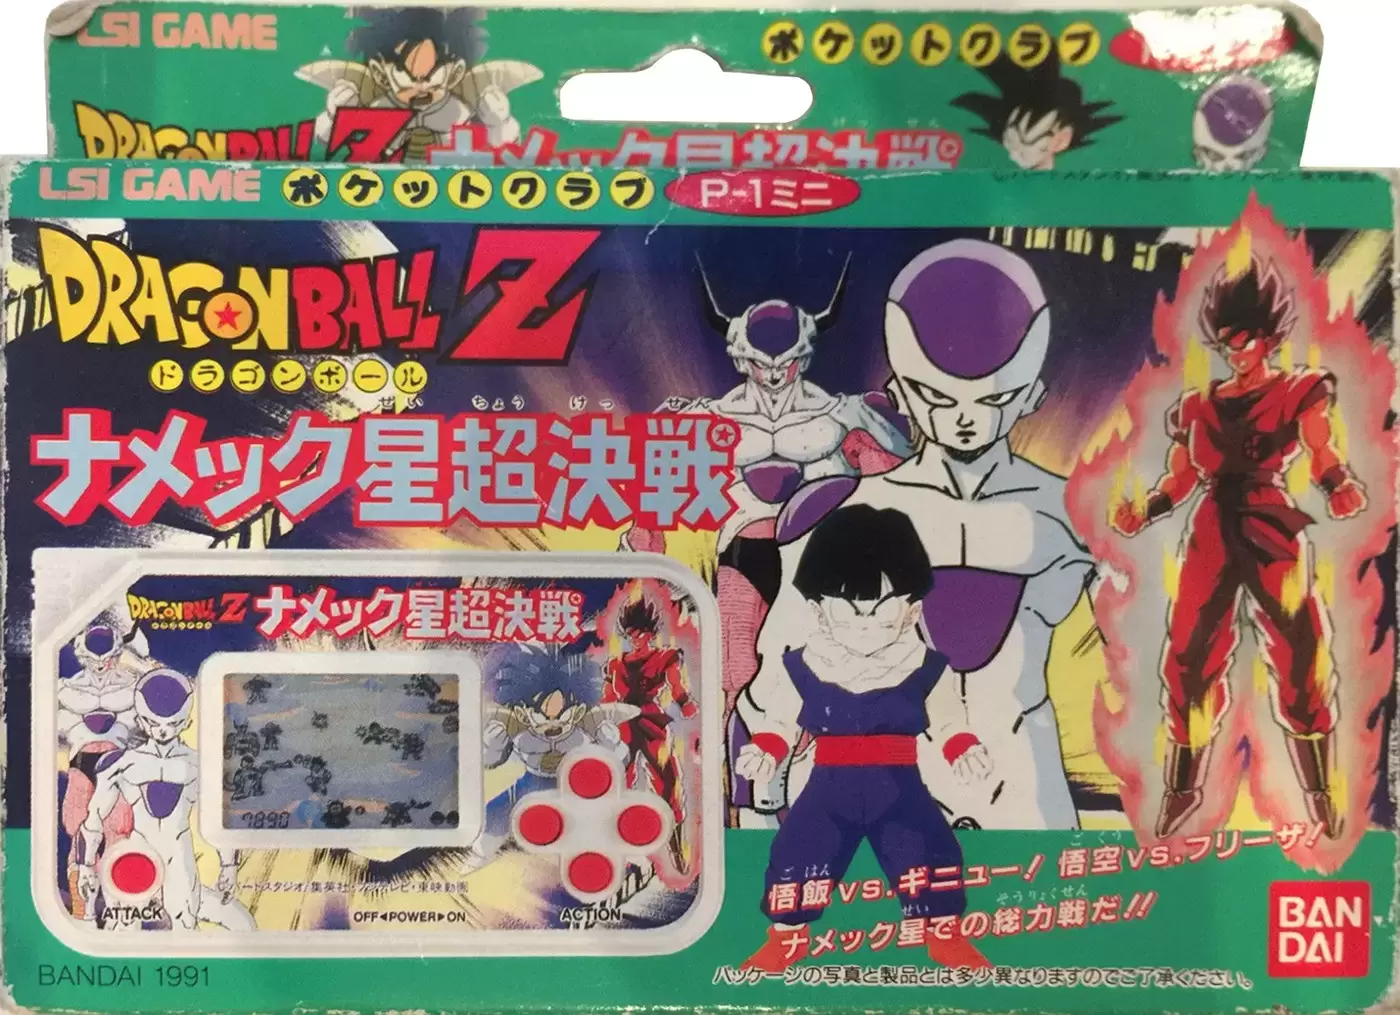 Bandai Electronics - Dragon Ball Z: Namekkusei Chō Kessen LSI Game